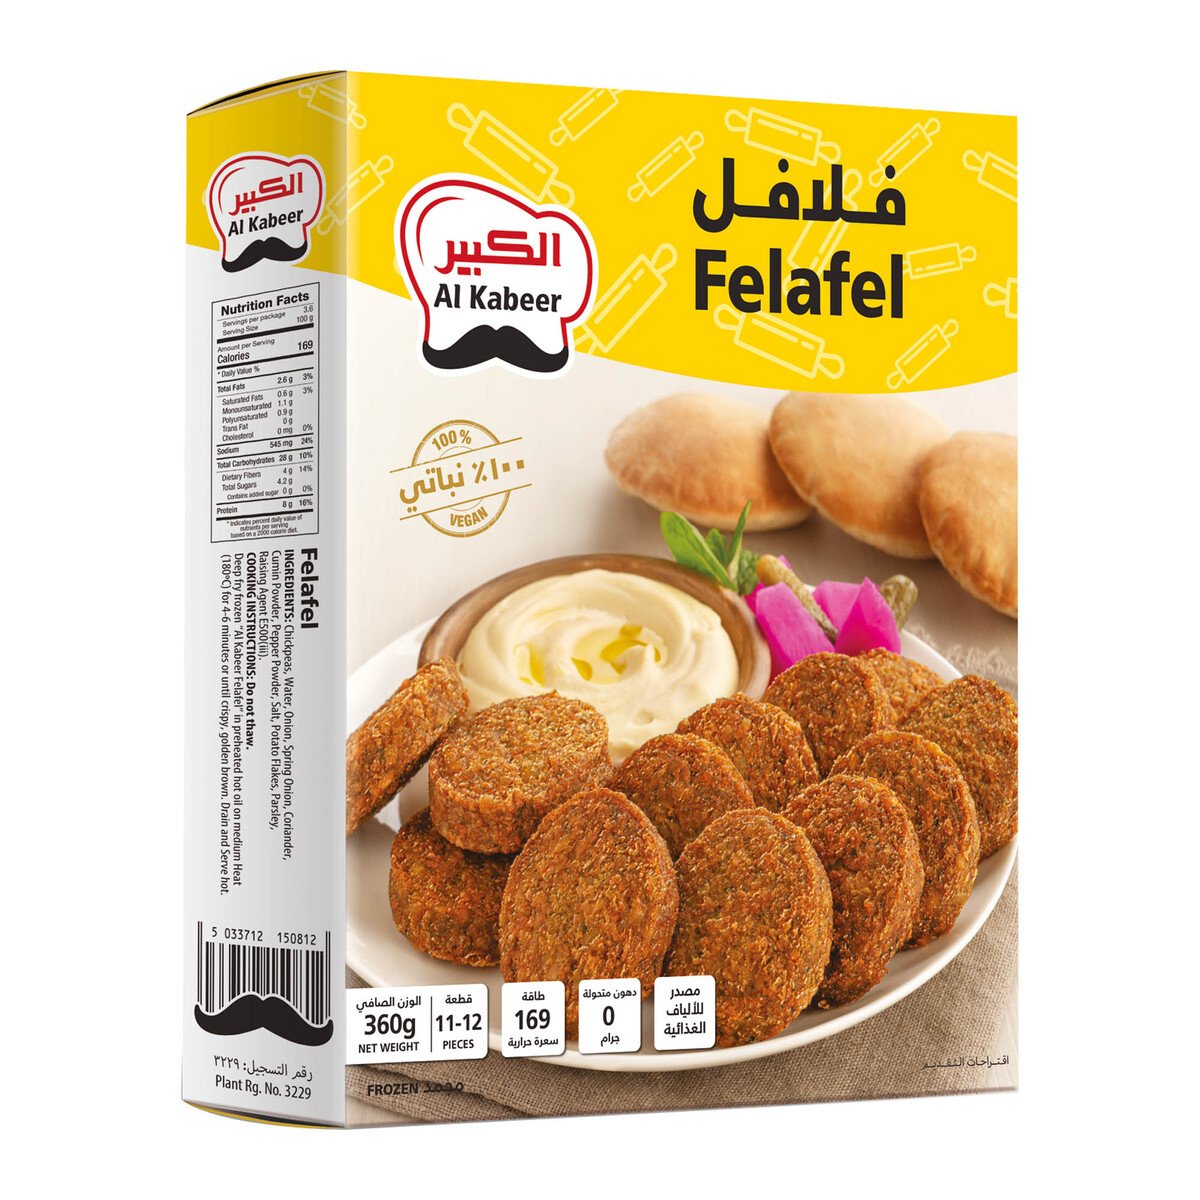 Buy Al Kabeer Felafel 360 g Online at Best Price | Ethnic Ready Meals | Lulu UAE in Saudi Arabia